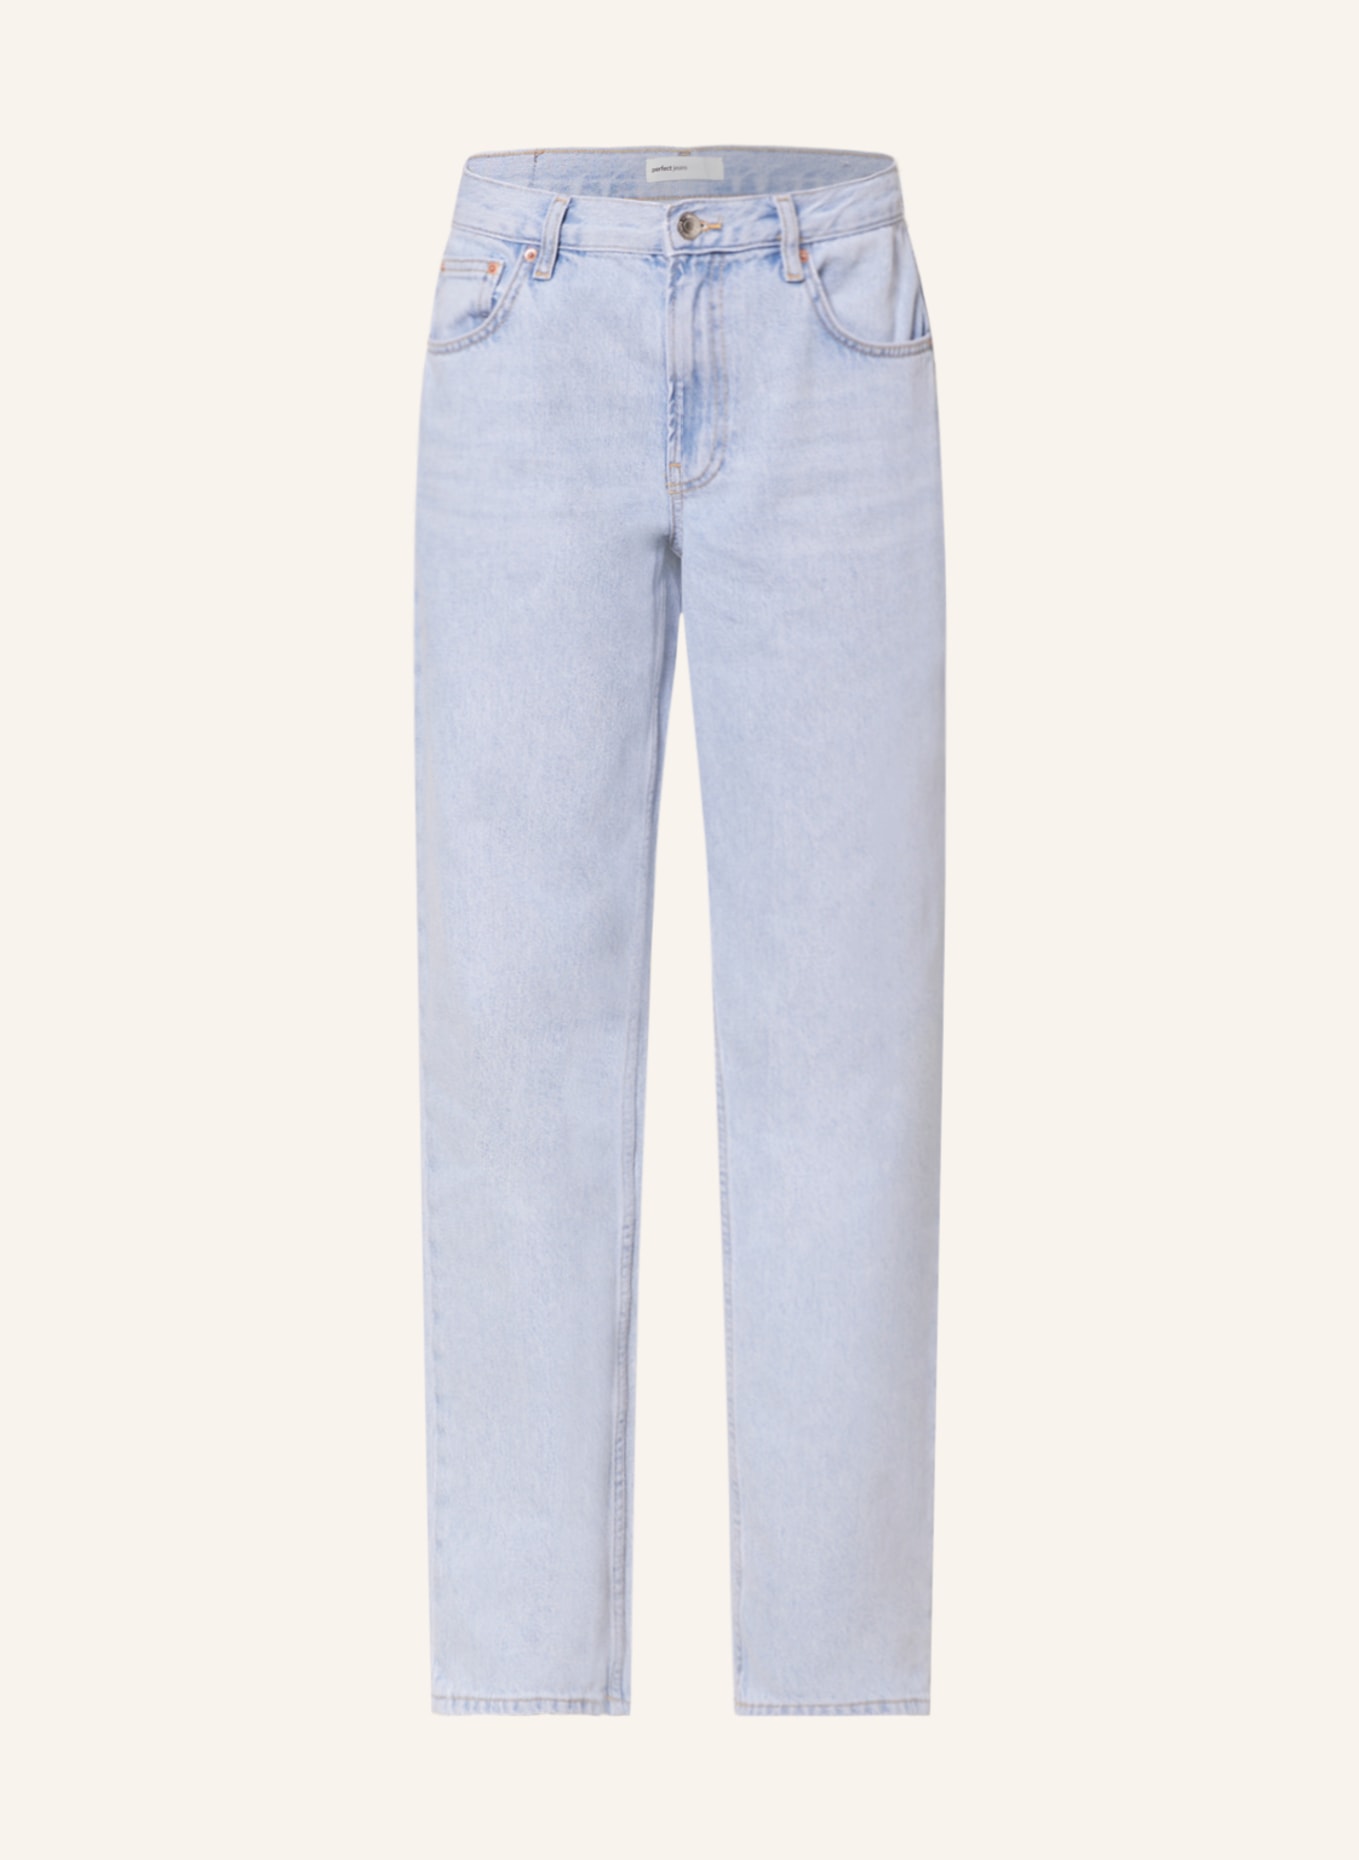 gina tricot Boyfriend jeans, Color: 5973 Pale blue (Image 1)